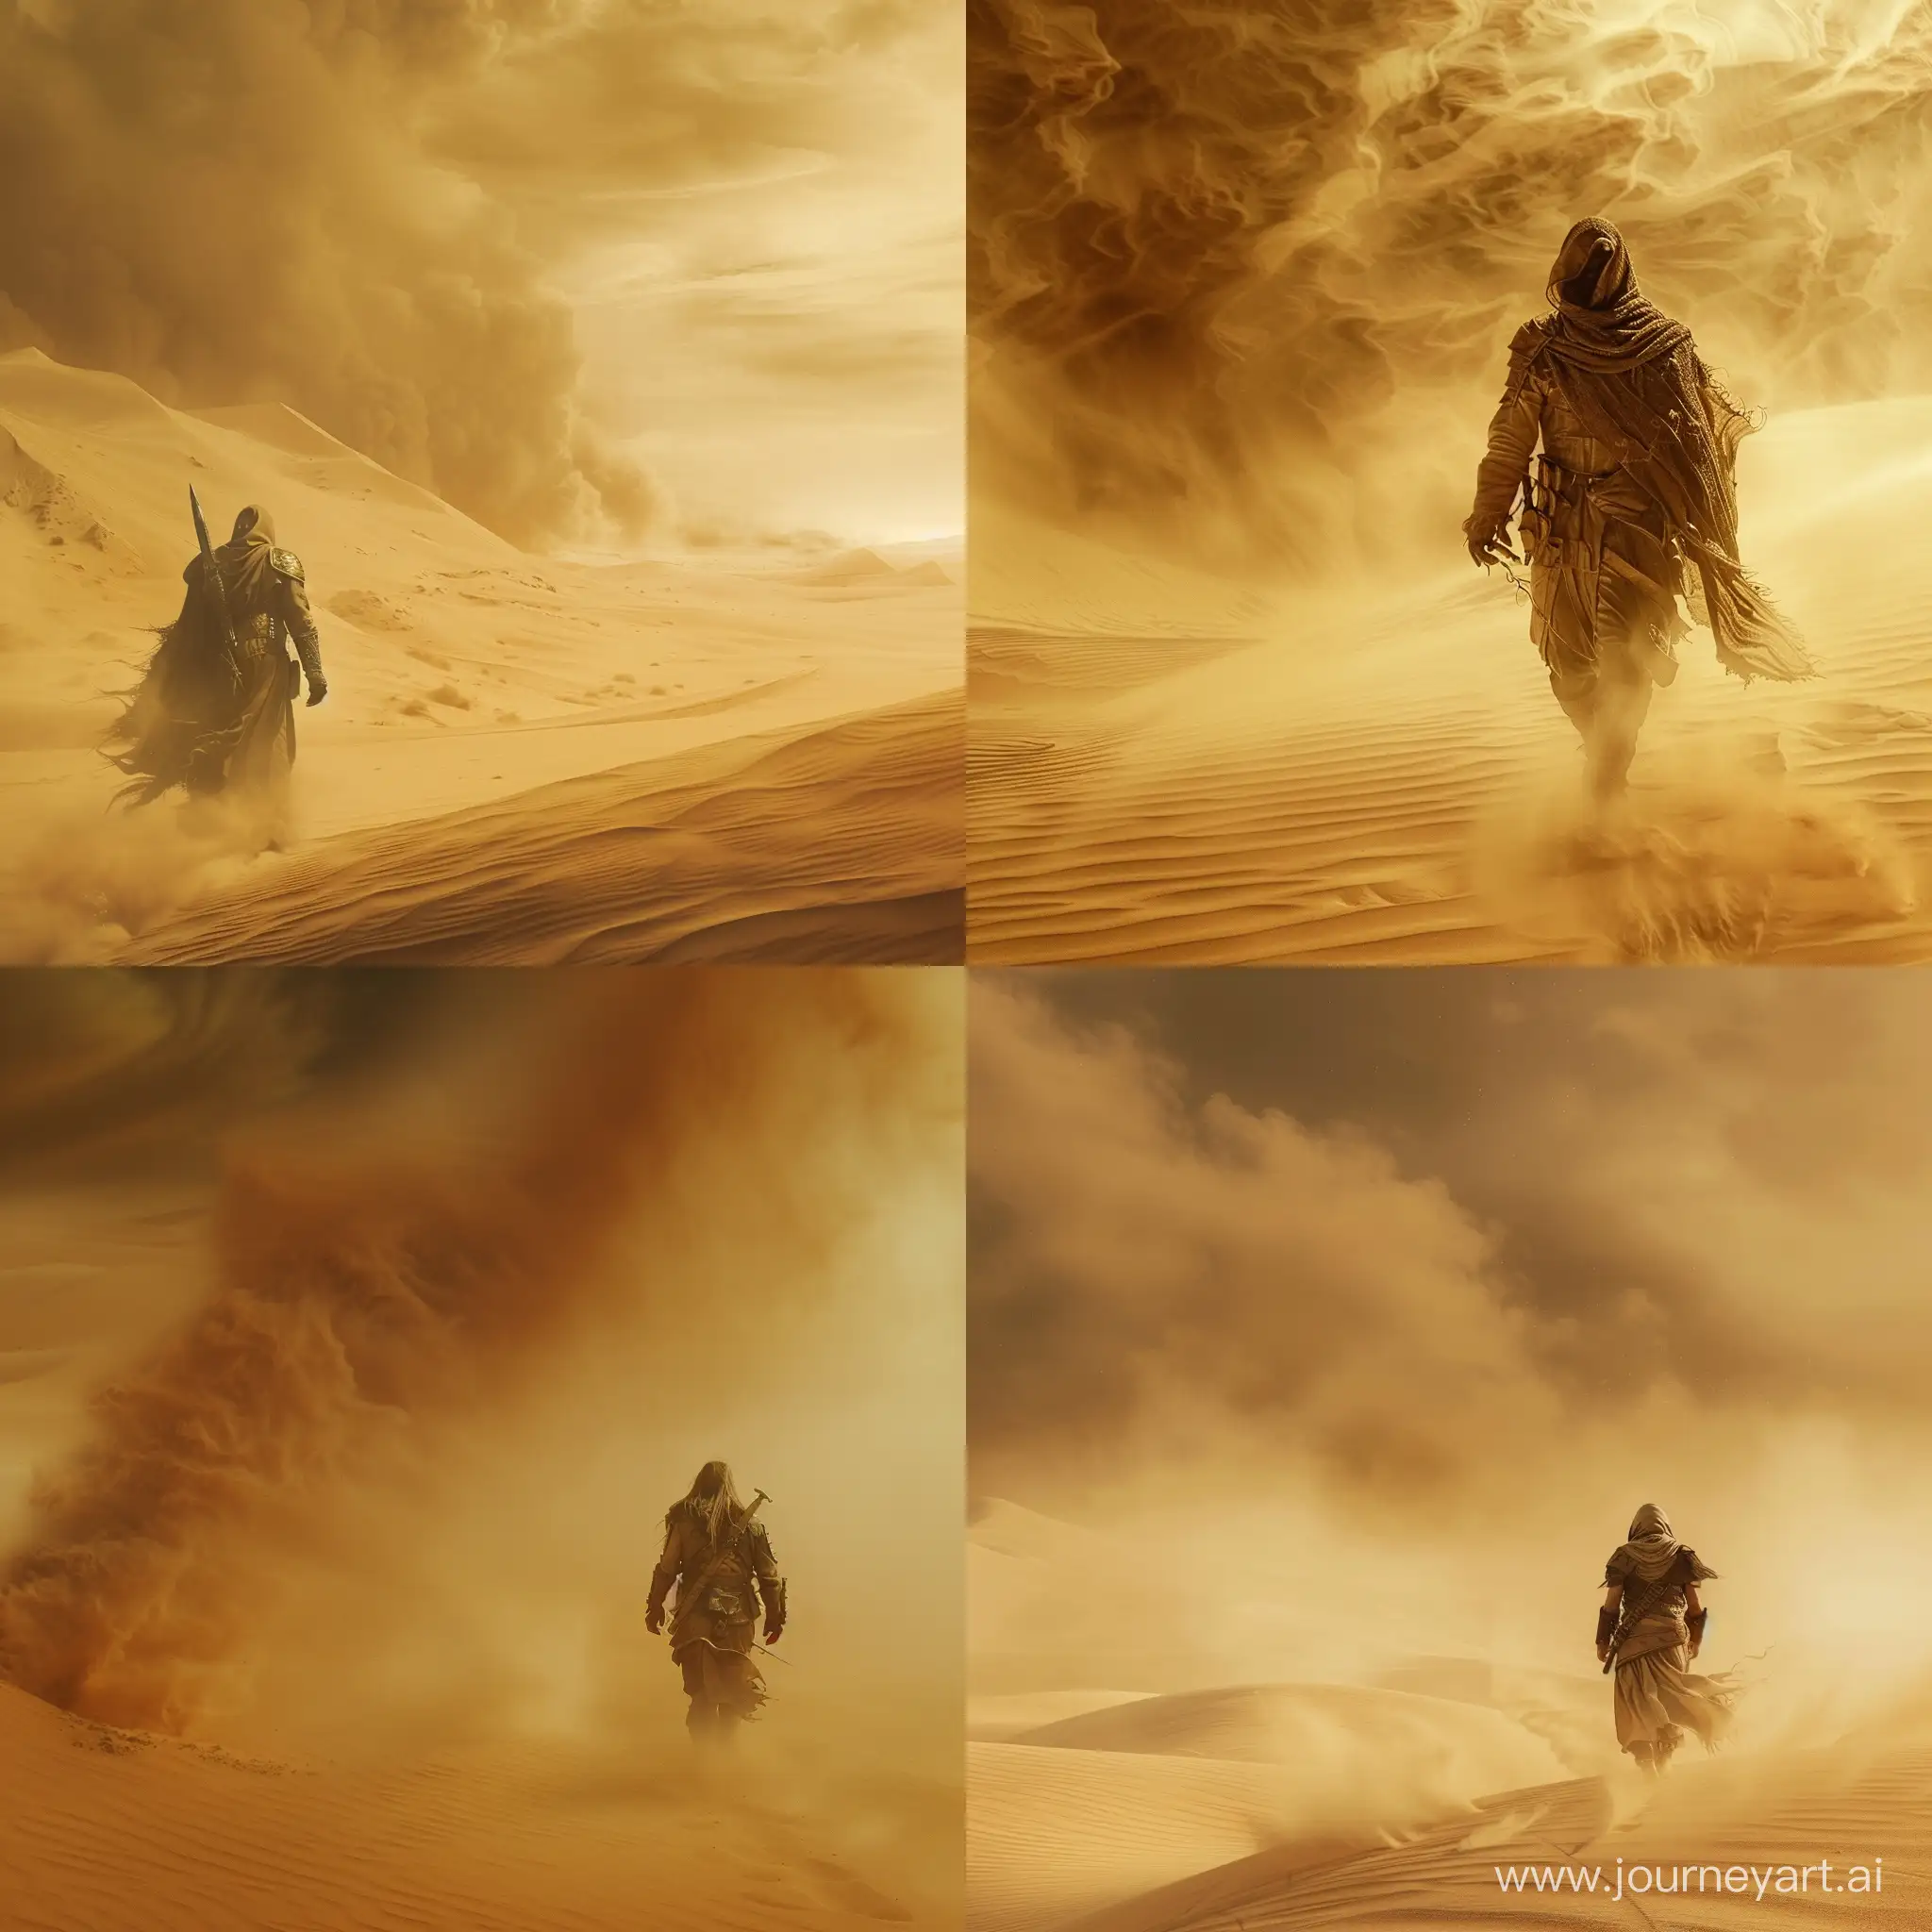 одинокий воин идёт среди песчаных дюн, песчаная буря